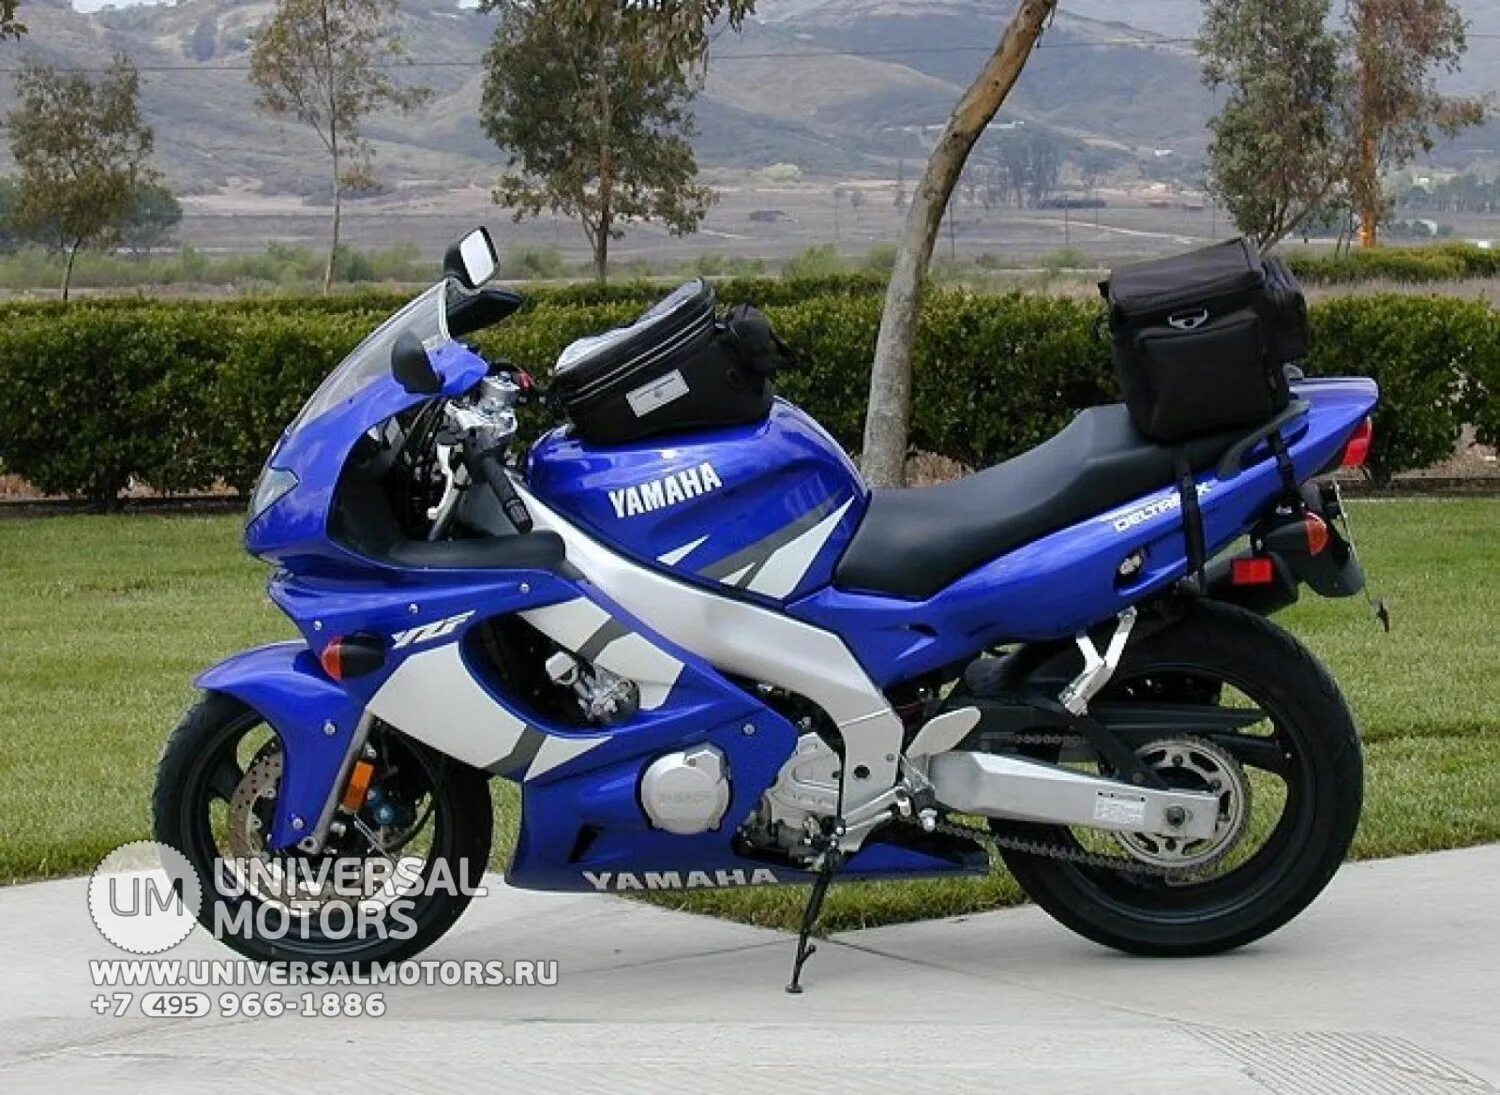 Yamaha купить б у. Yamaha yzf600r. Yamaha YZF 600r 2004. Yamaha 600r. Ямаха yzf600r Thundercat.